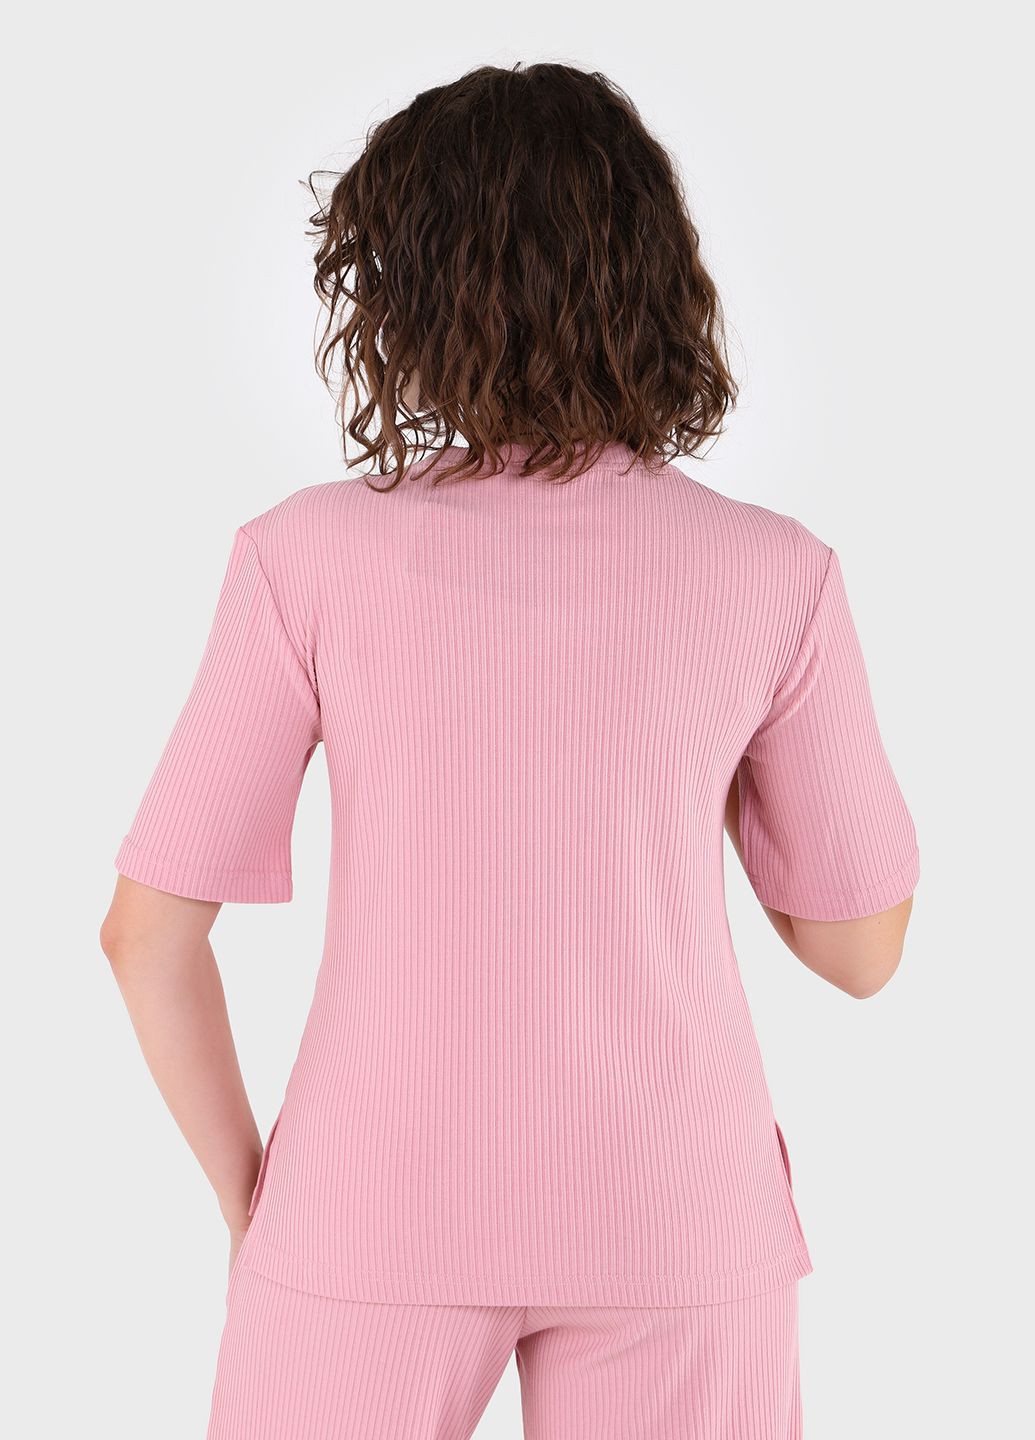 Купить Костюм женский в рубчик розового цвета Merlini Аликанте 100000102, размер 42-44 в интернет-магазине